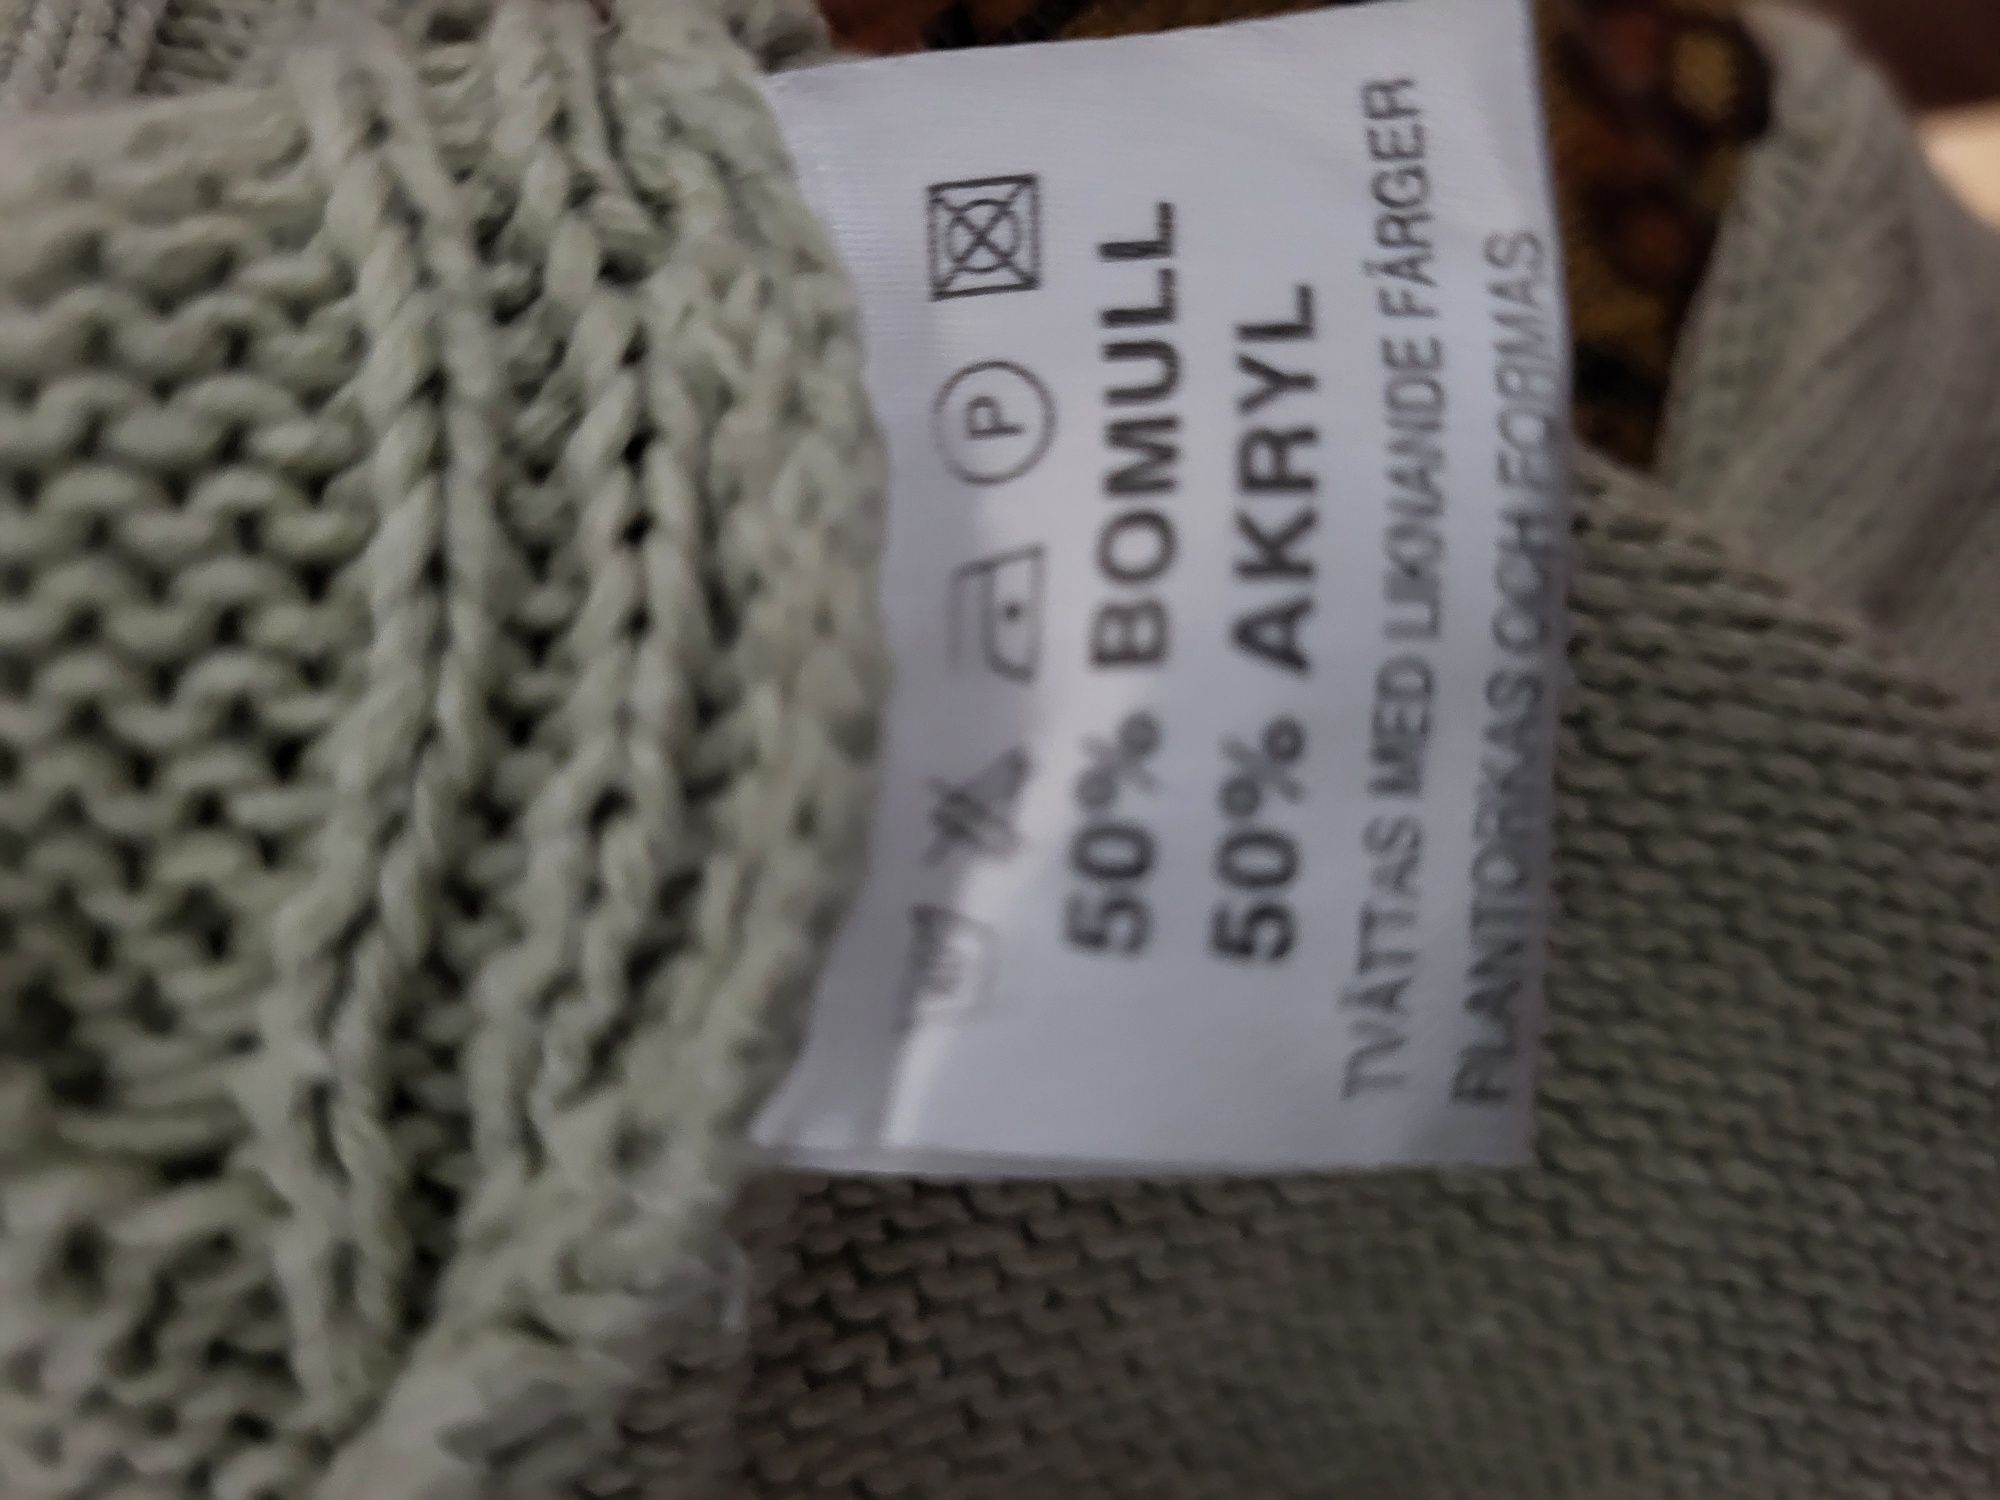 Swetr z kapturem rozmiar M cena 13zlotych